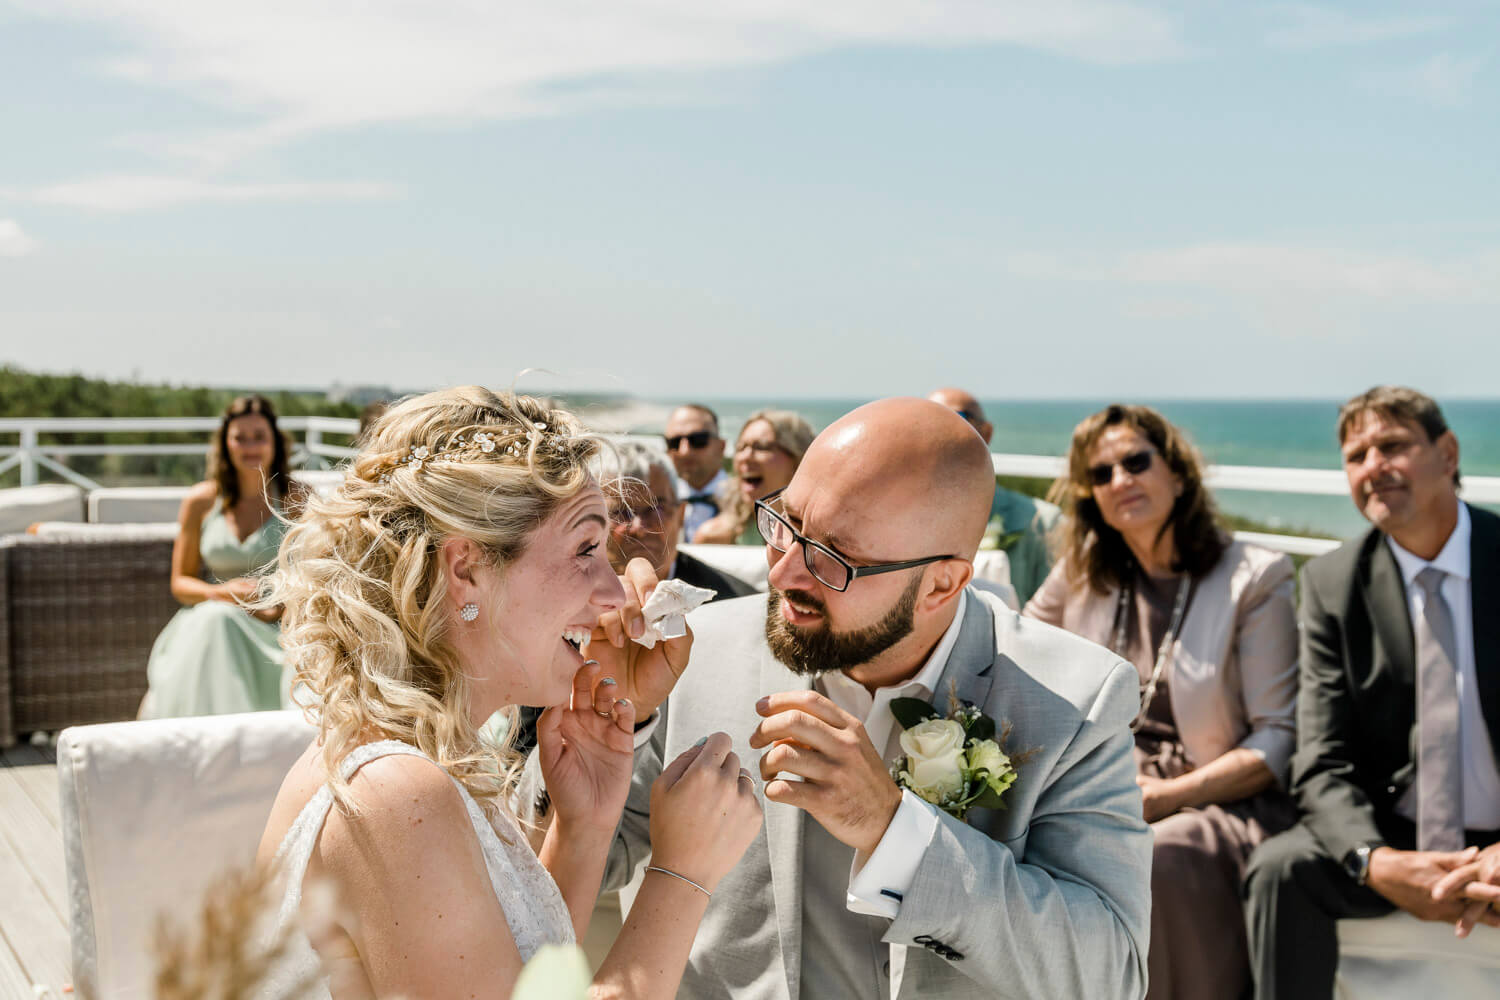 Emotionale Gesten während der Trauung. Eine wunderschöne Hochzeitslocation mit Blick auf die Ostsee.